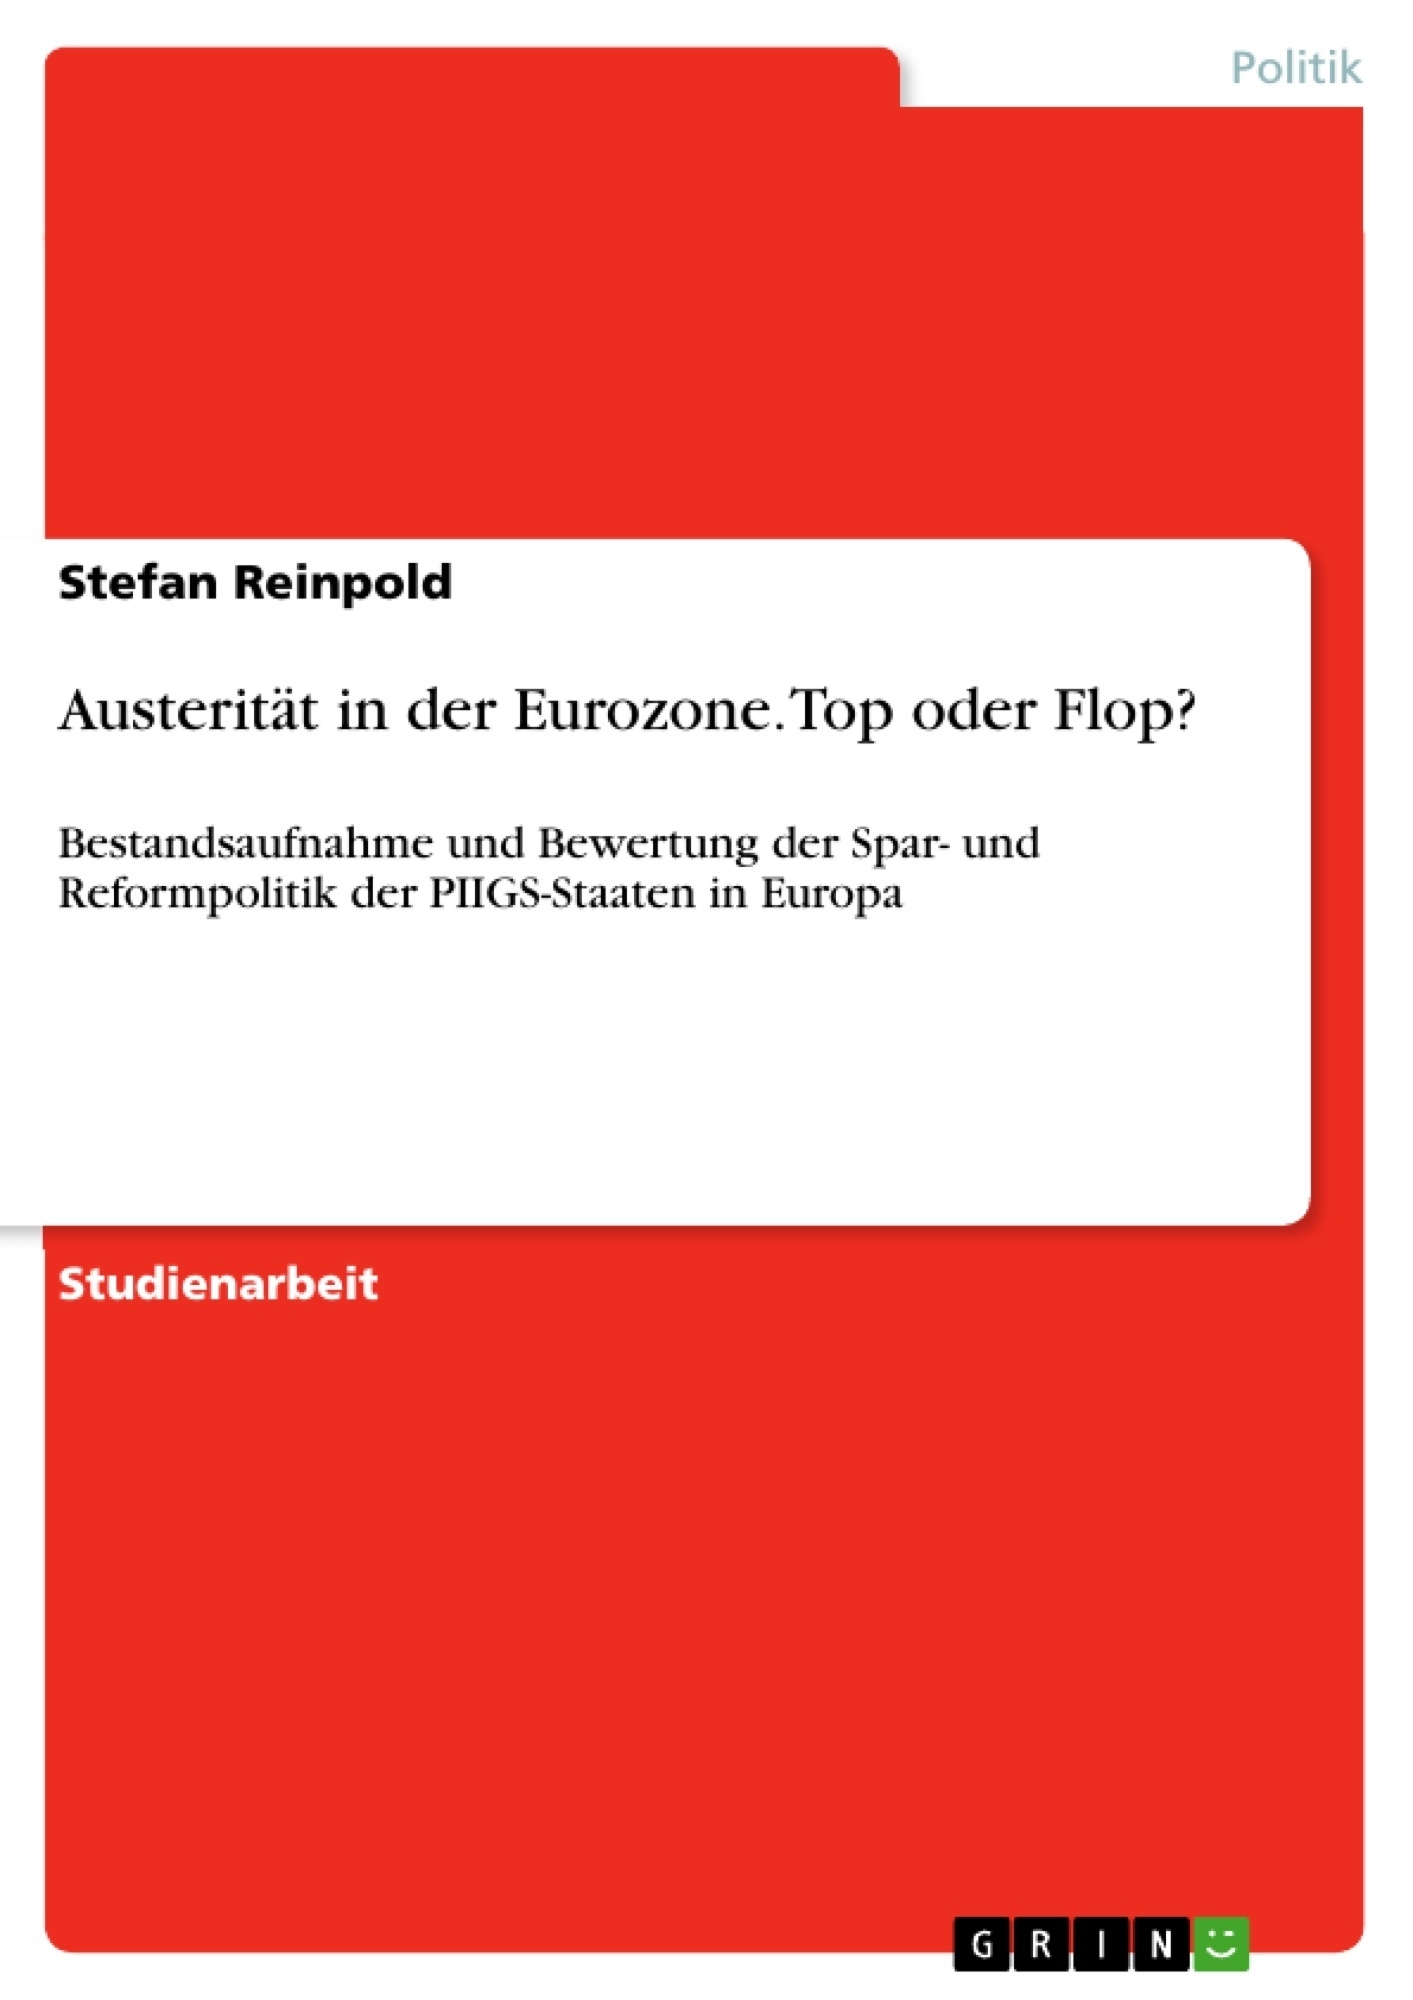 Austerität in der Eurozone. Top oder Flop? Bestandsaufnahme und Bewertung der Spar- und Reformpolitik der PIIGS-Staaten in Europa